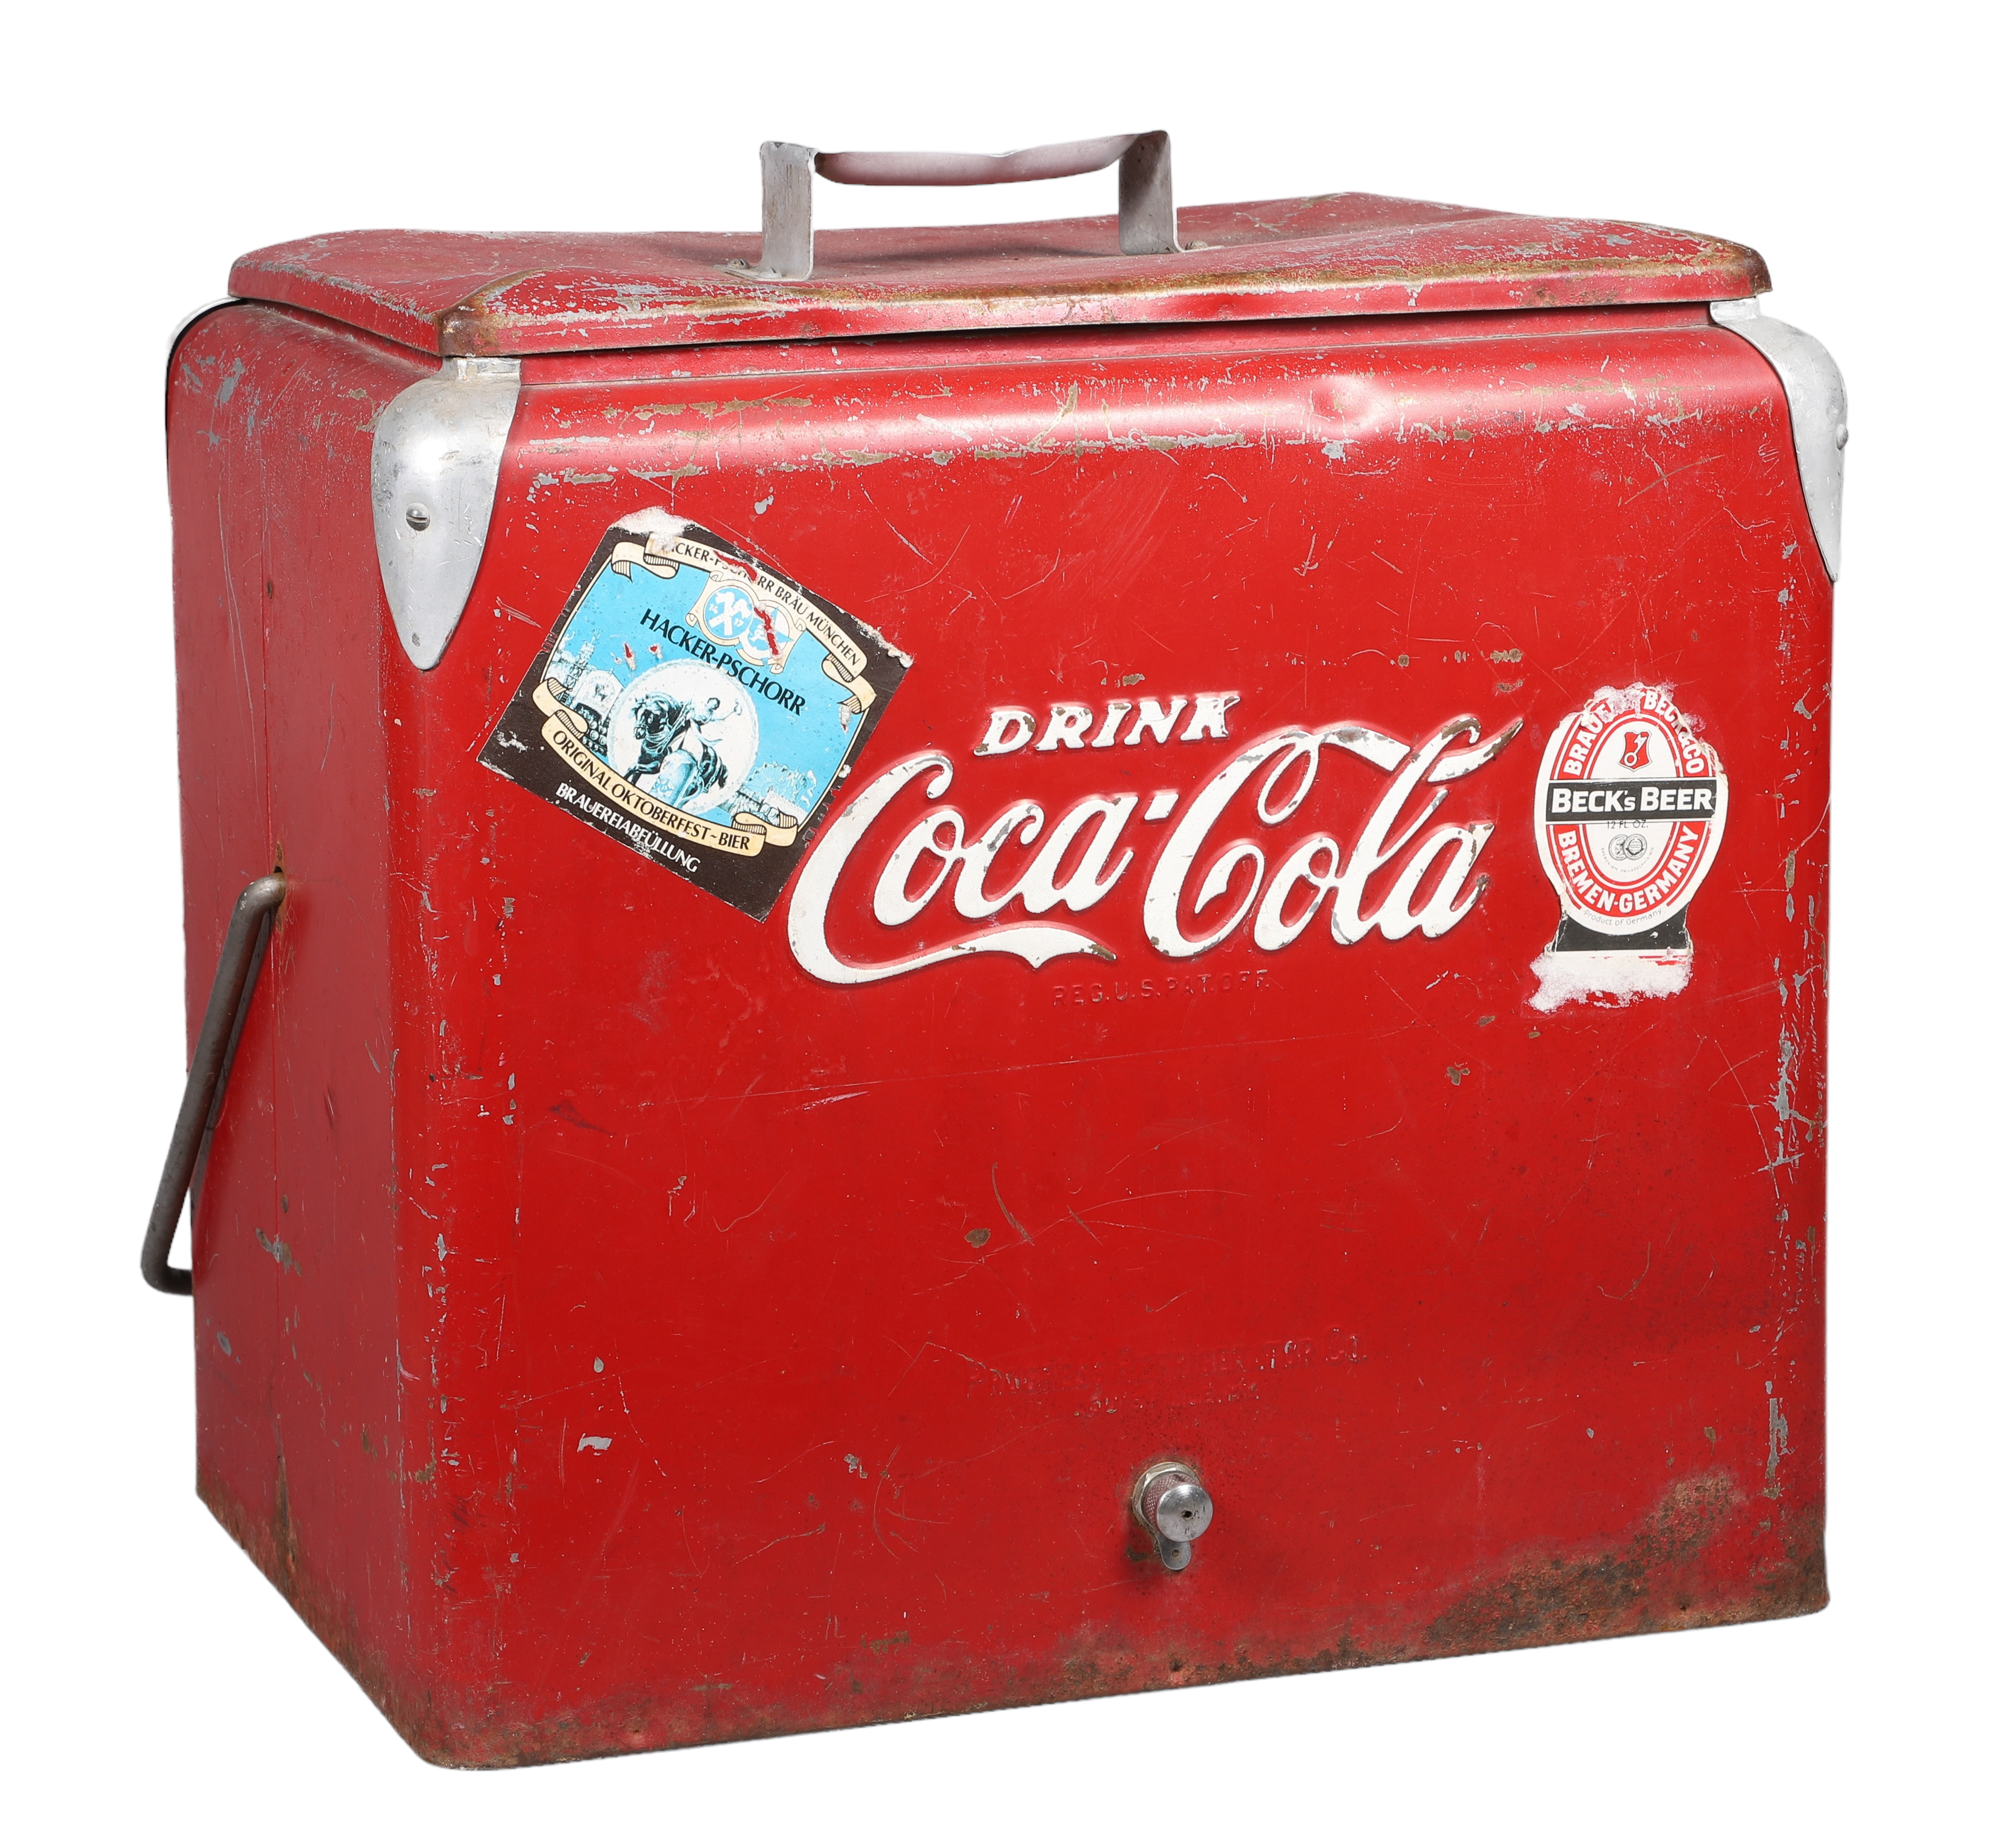 Vintage Drink Coca-Cola cooler, red